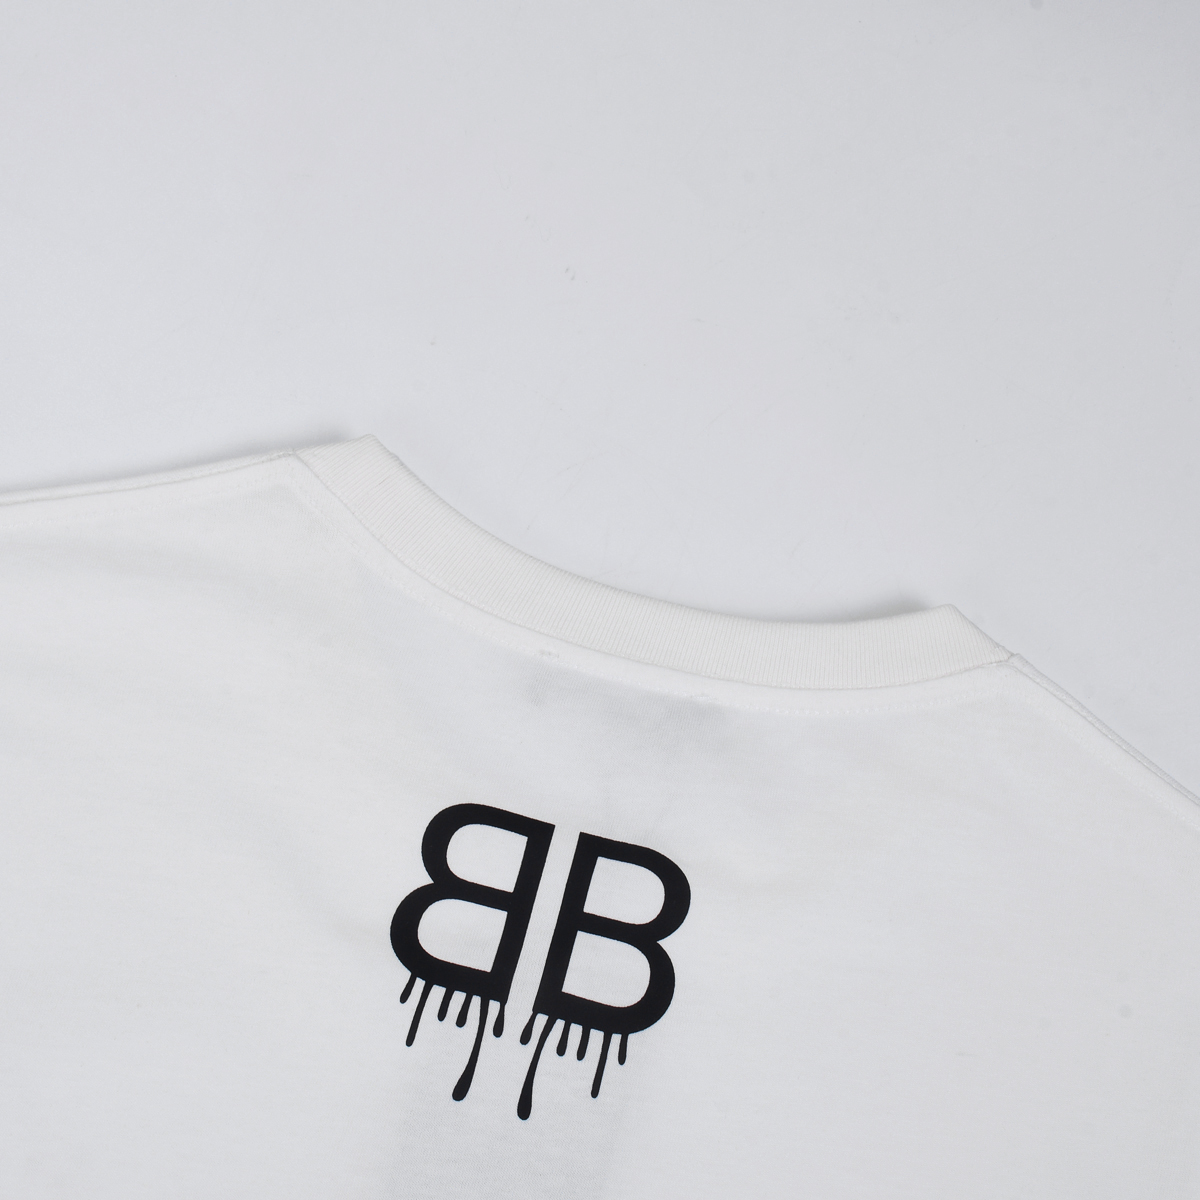 新款上架BA#L#EN#CI#GA新款T恤重叠字母印花数码印花工艺精梳紧密纯棉面料舒适透气面料洗水不缩水